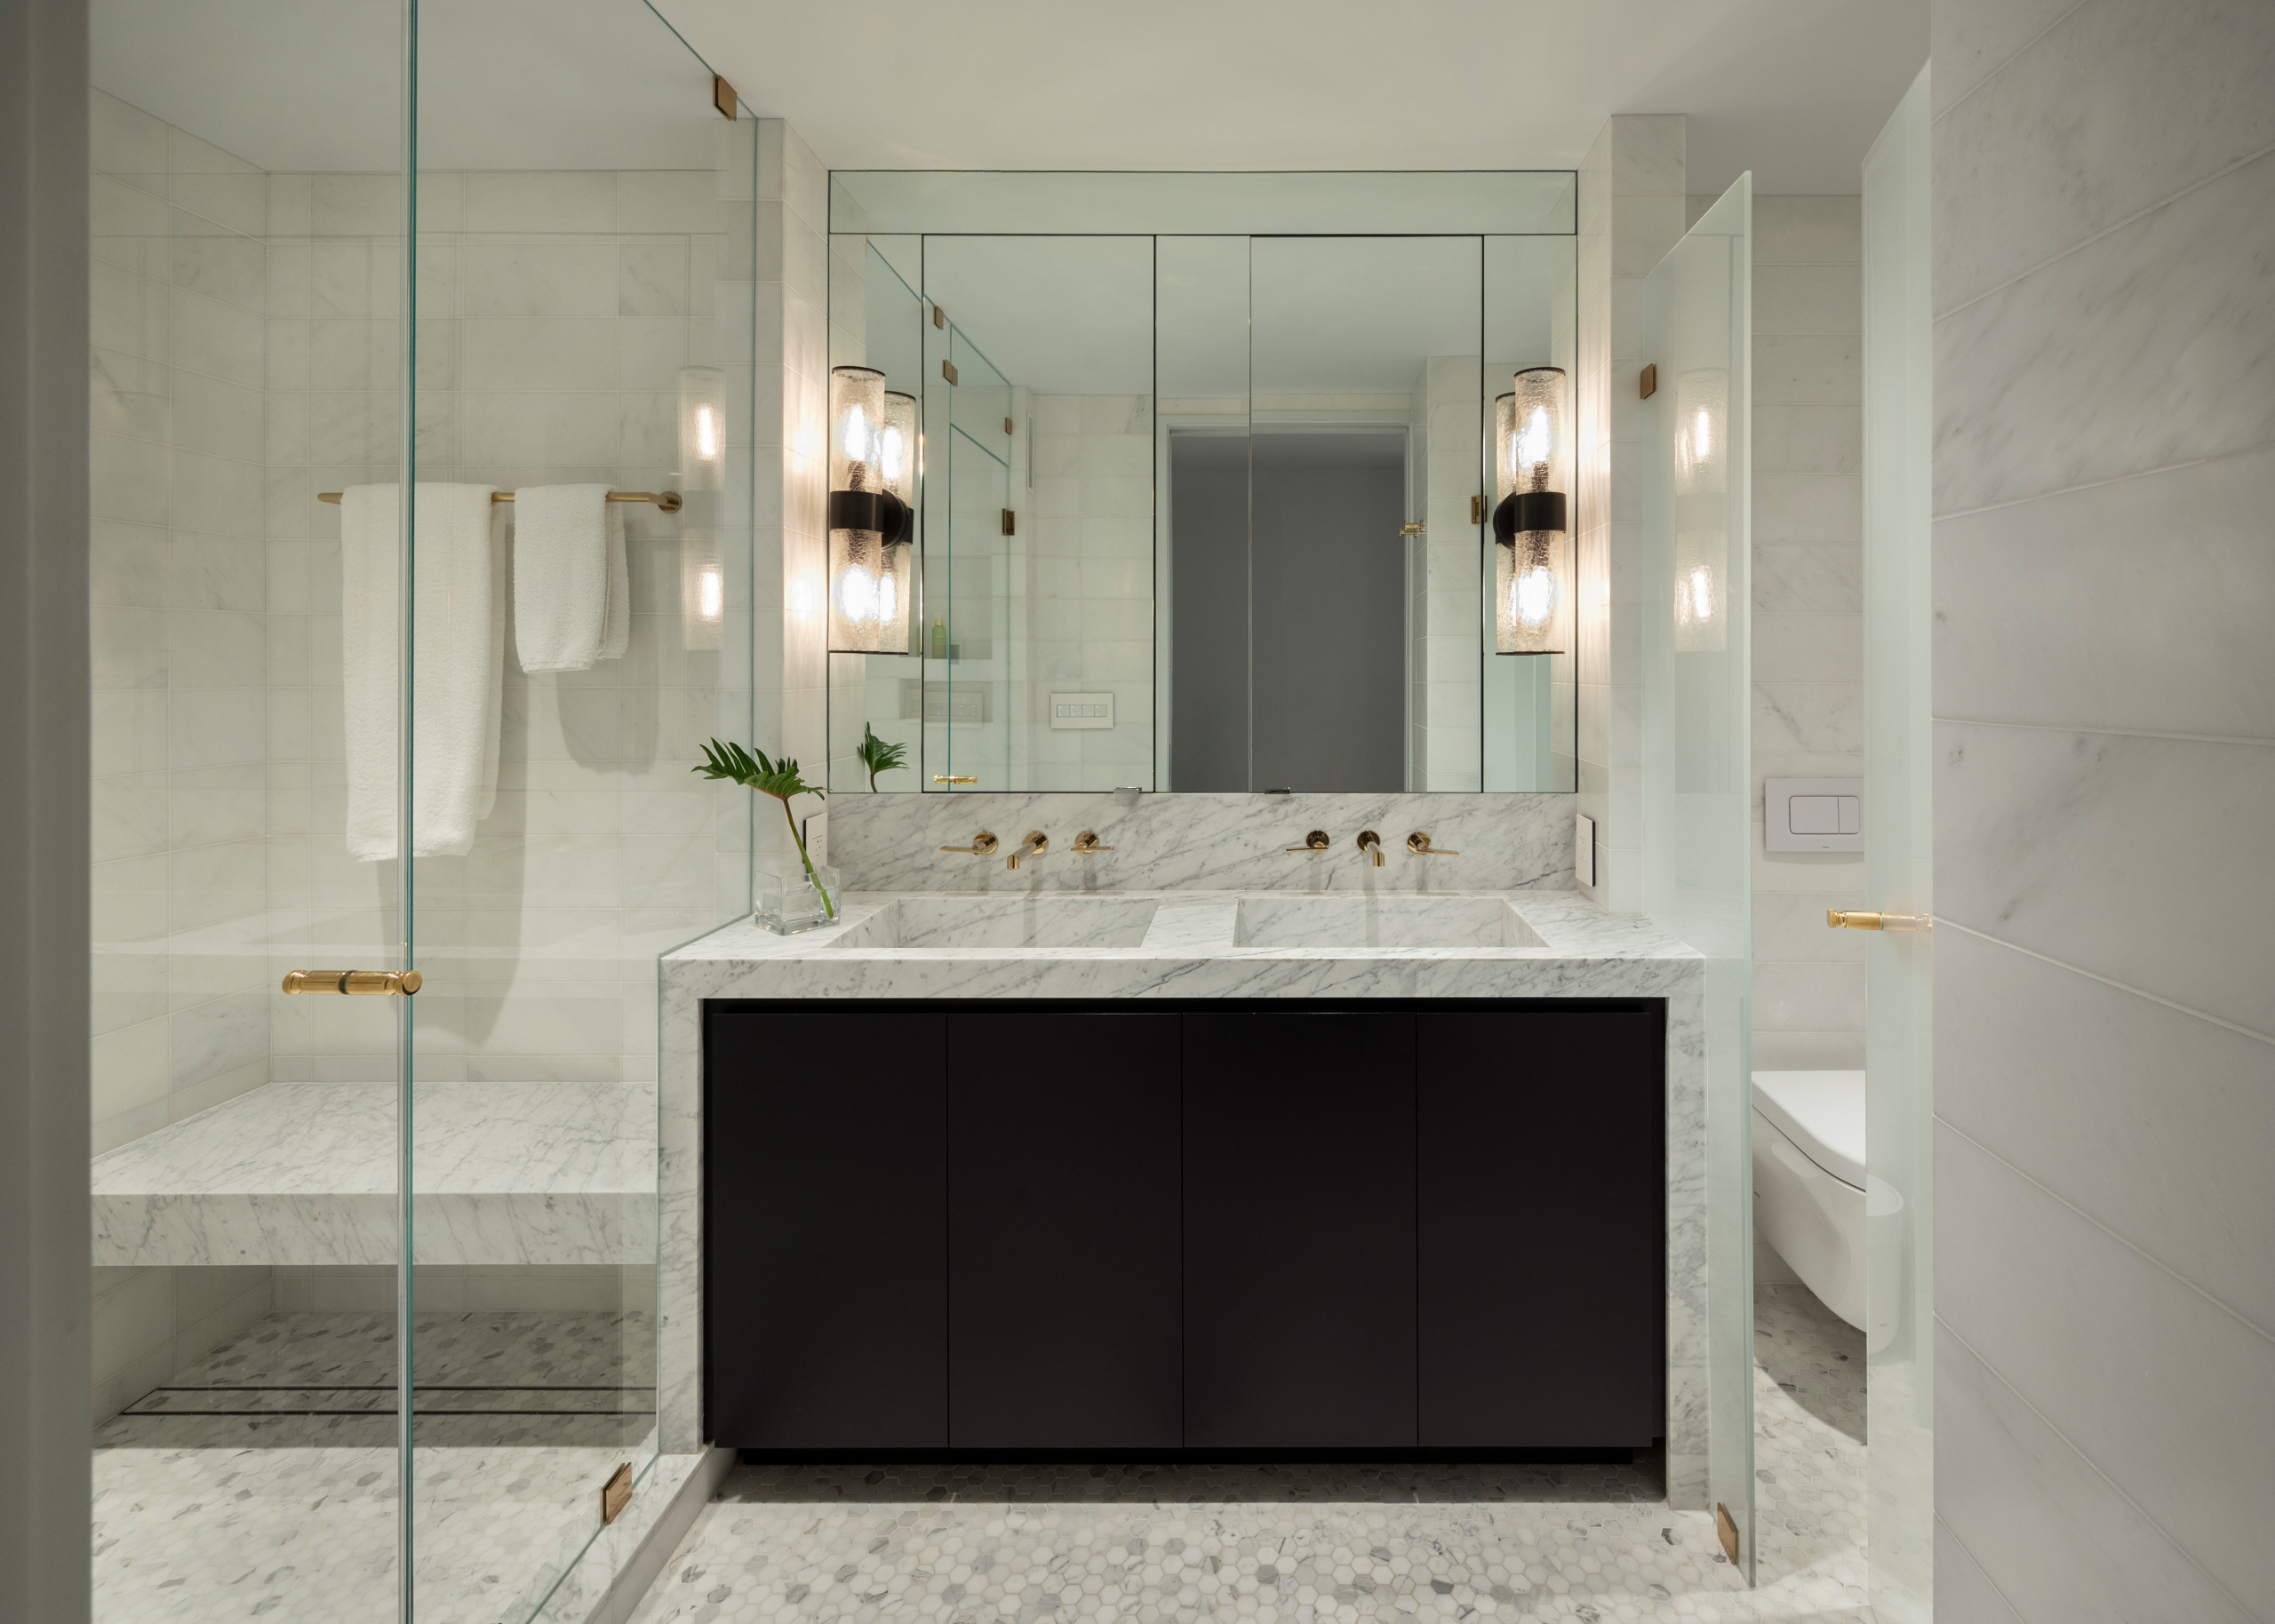 13 красивых идей для ванной комнаты в стиле ретро